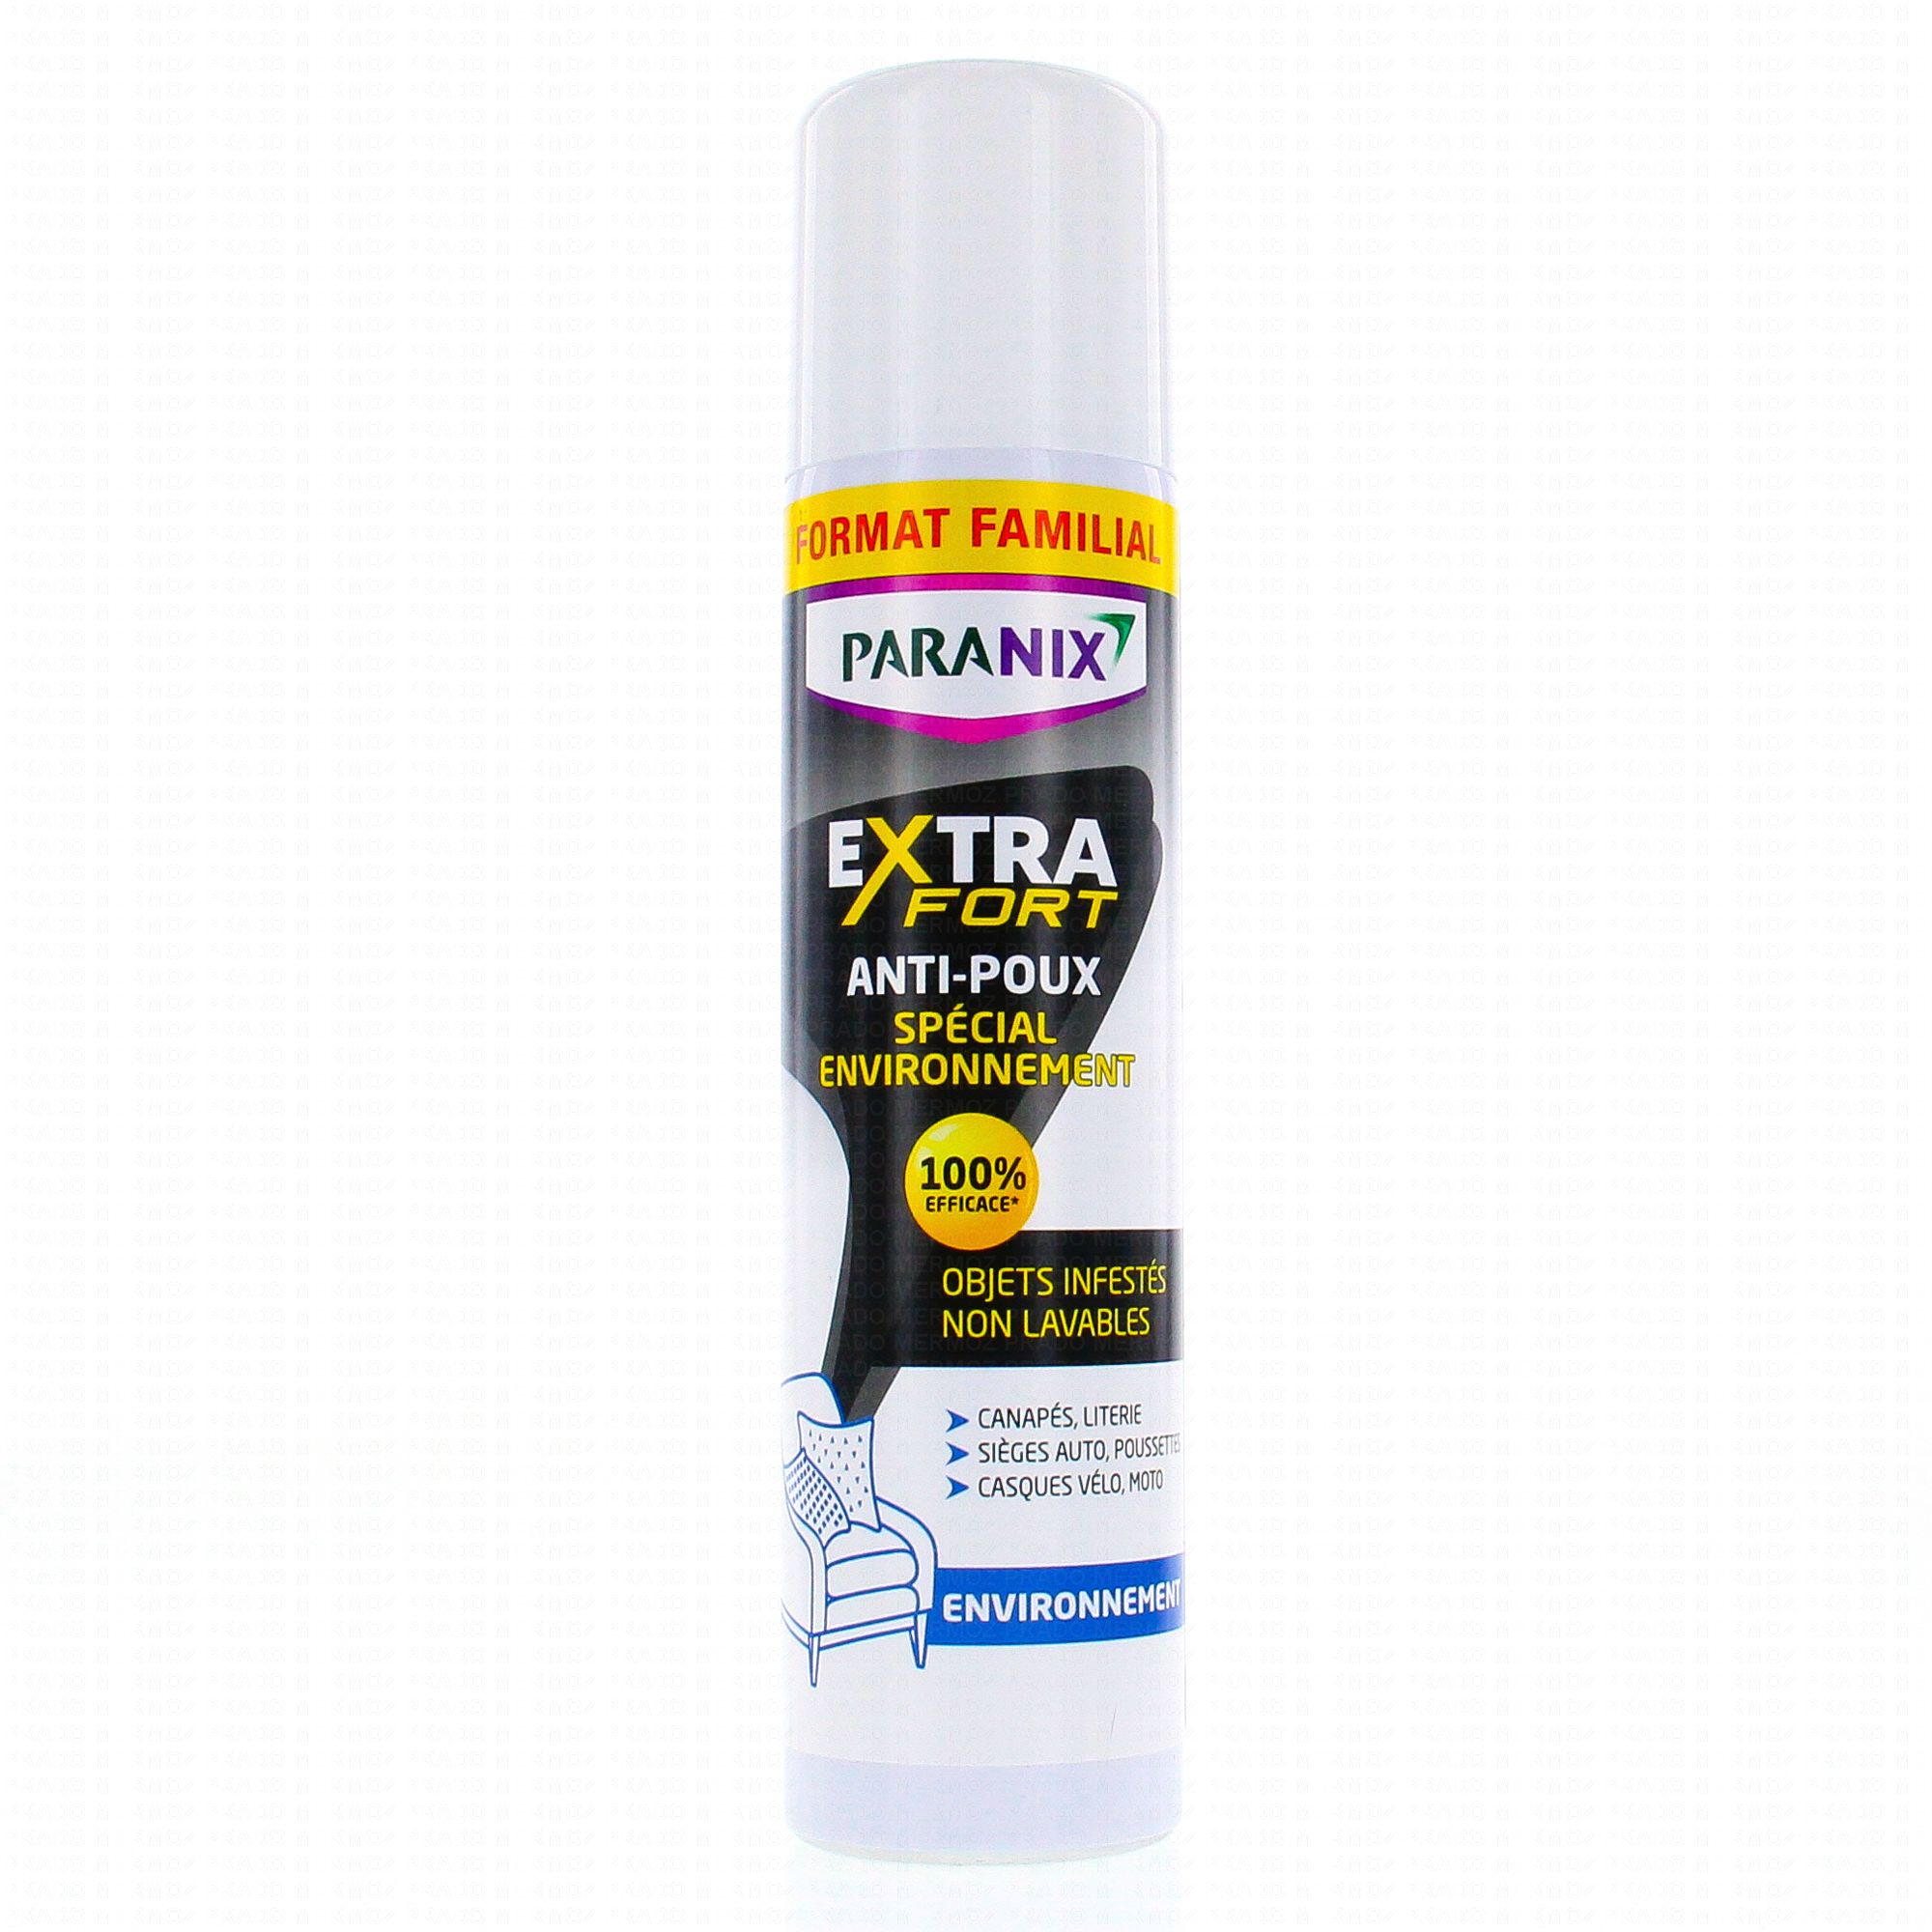 PARANIX Express Spray Anti poux Flacon 100ml - Pharmacie Prado Mermoz